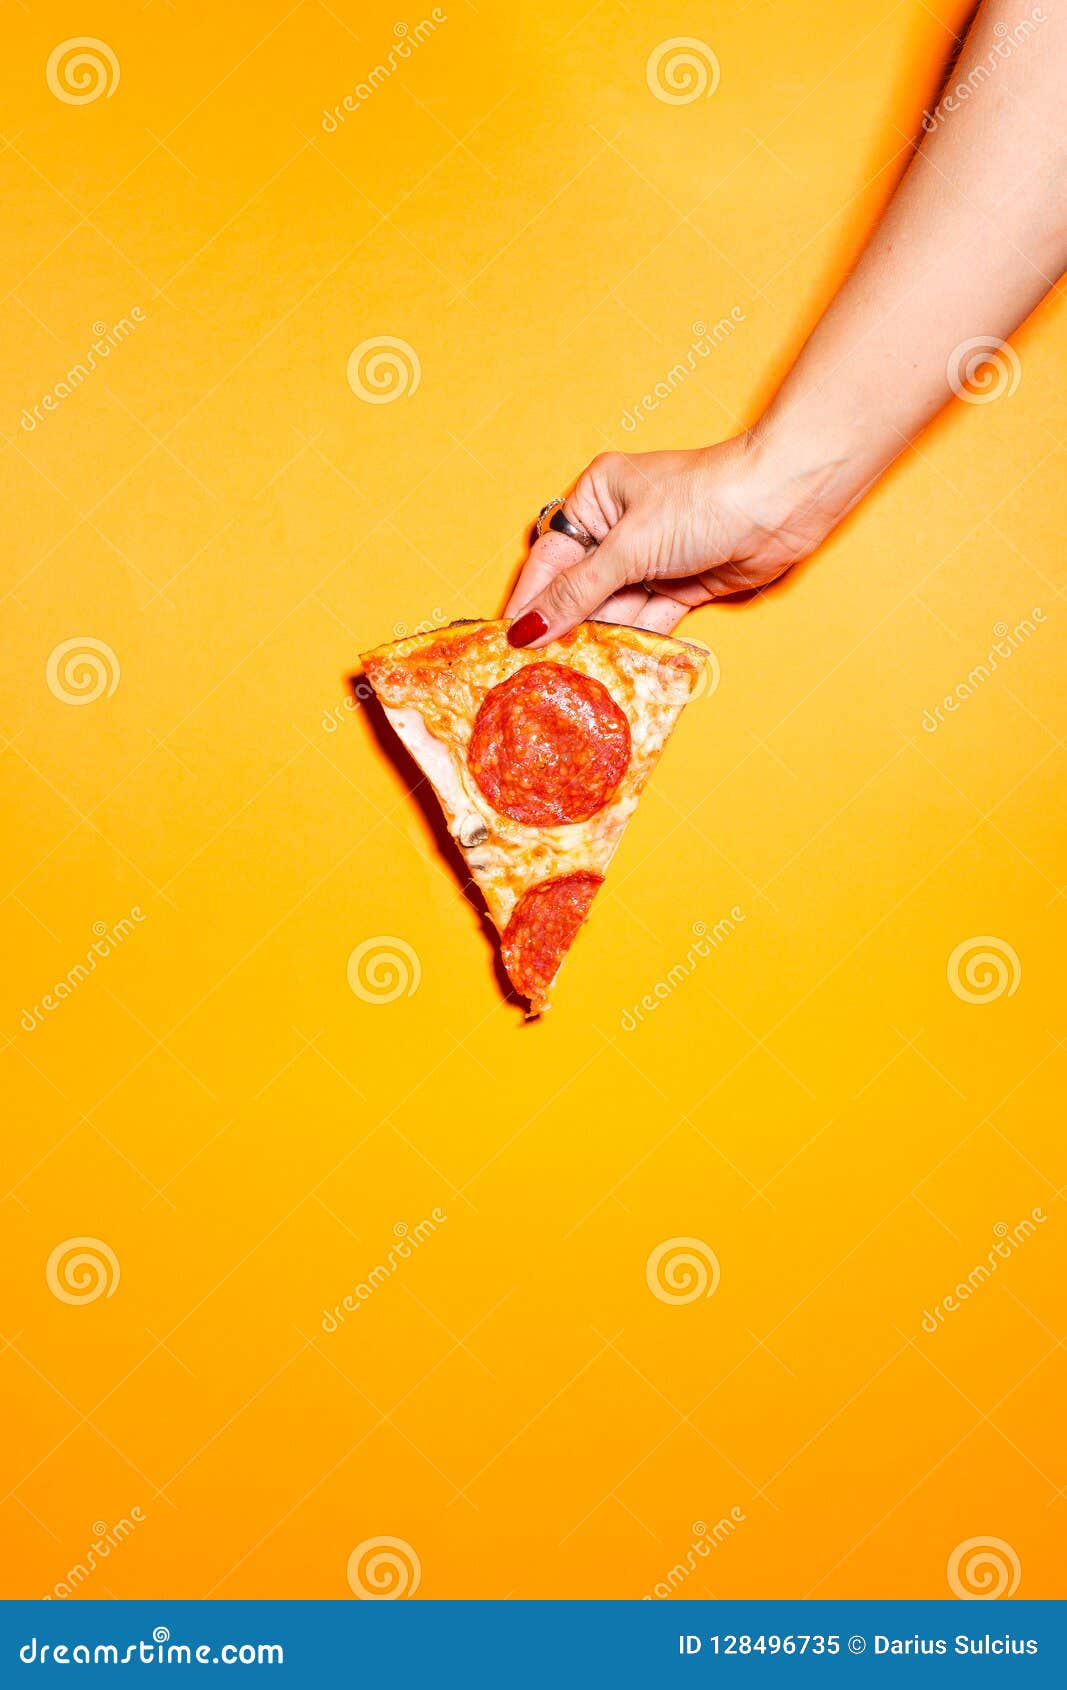 фотошоп девушка из куска пиццы фото 109